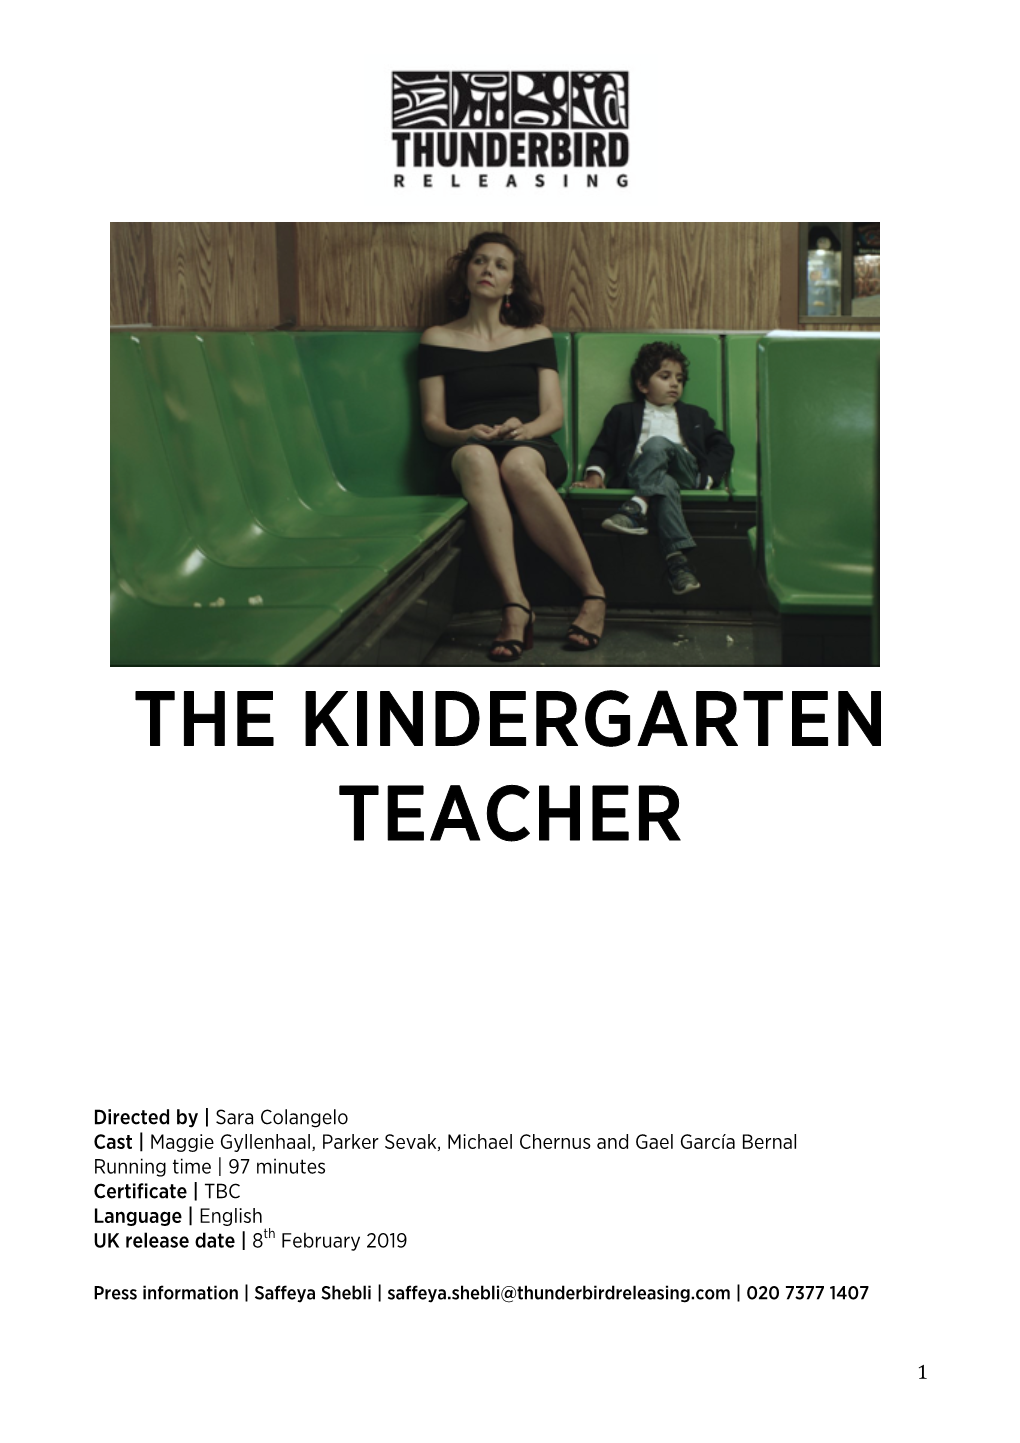 The Kindergarten Teacher PK